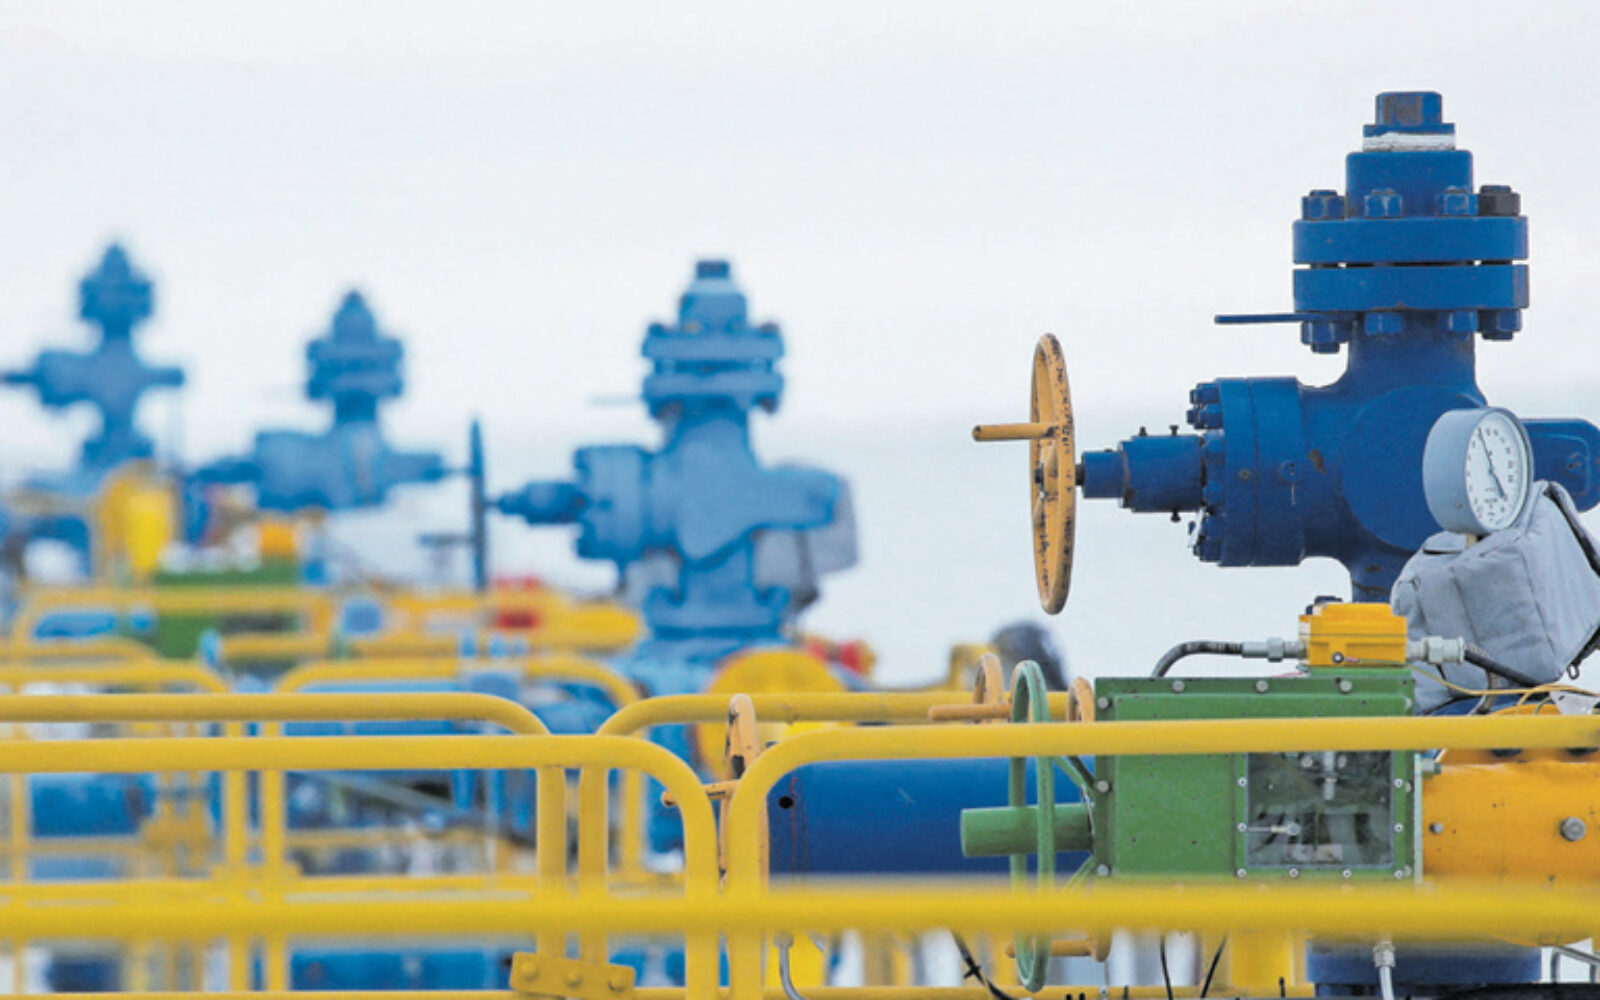 Njemačka i dalje vraća ruski plin, da li zbog preprodaje? - Poslovni dnevnik